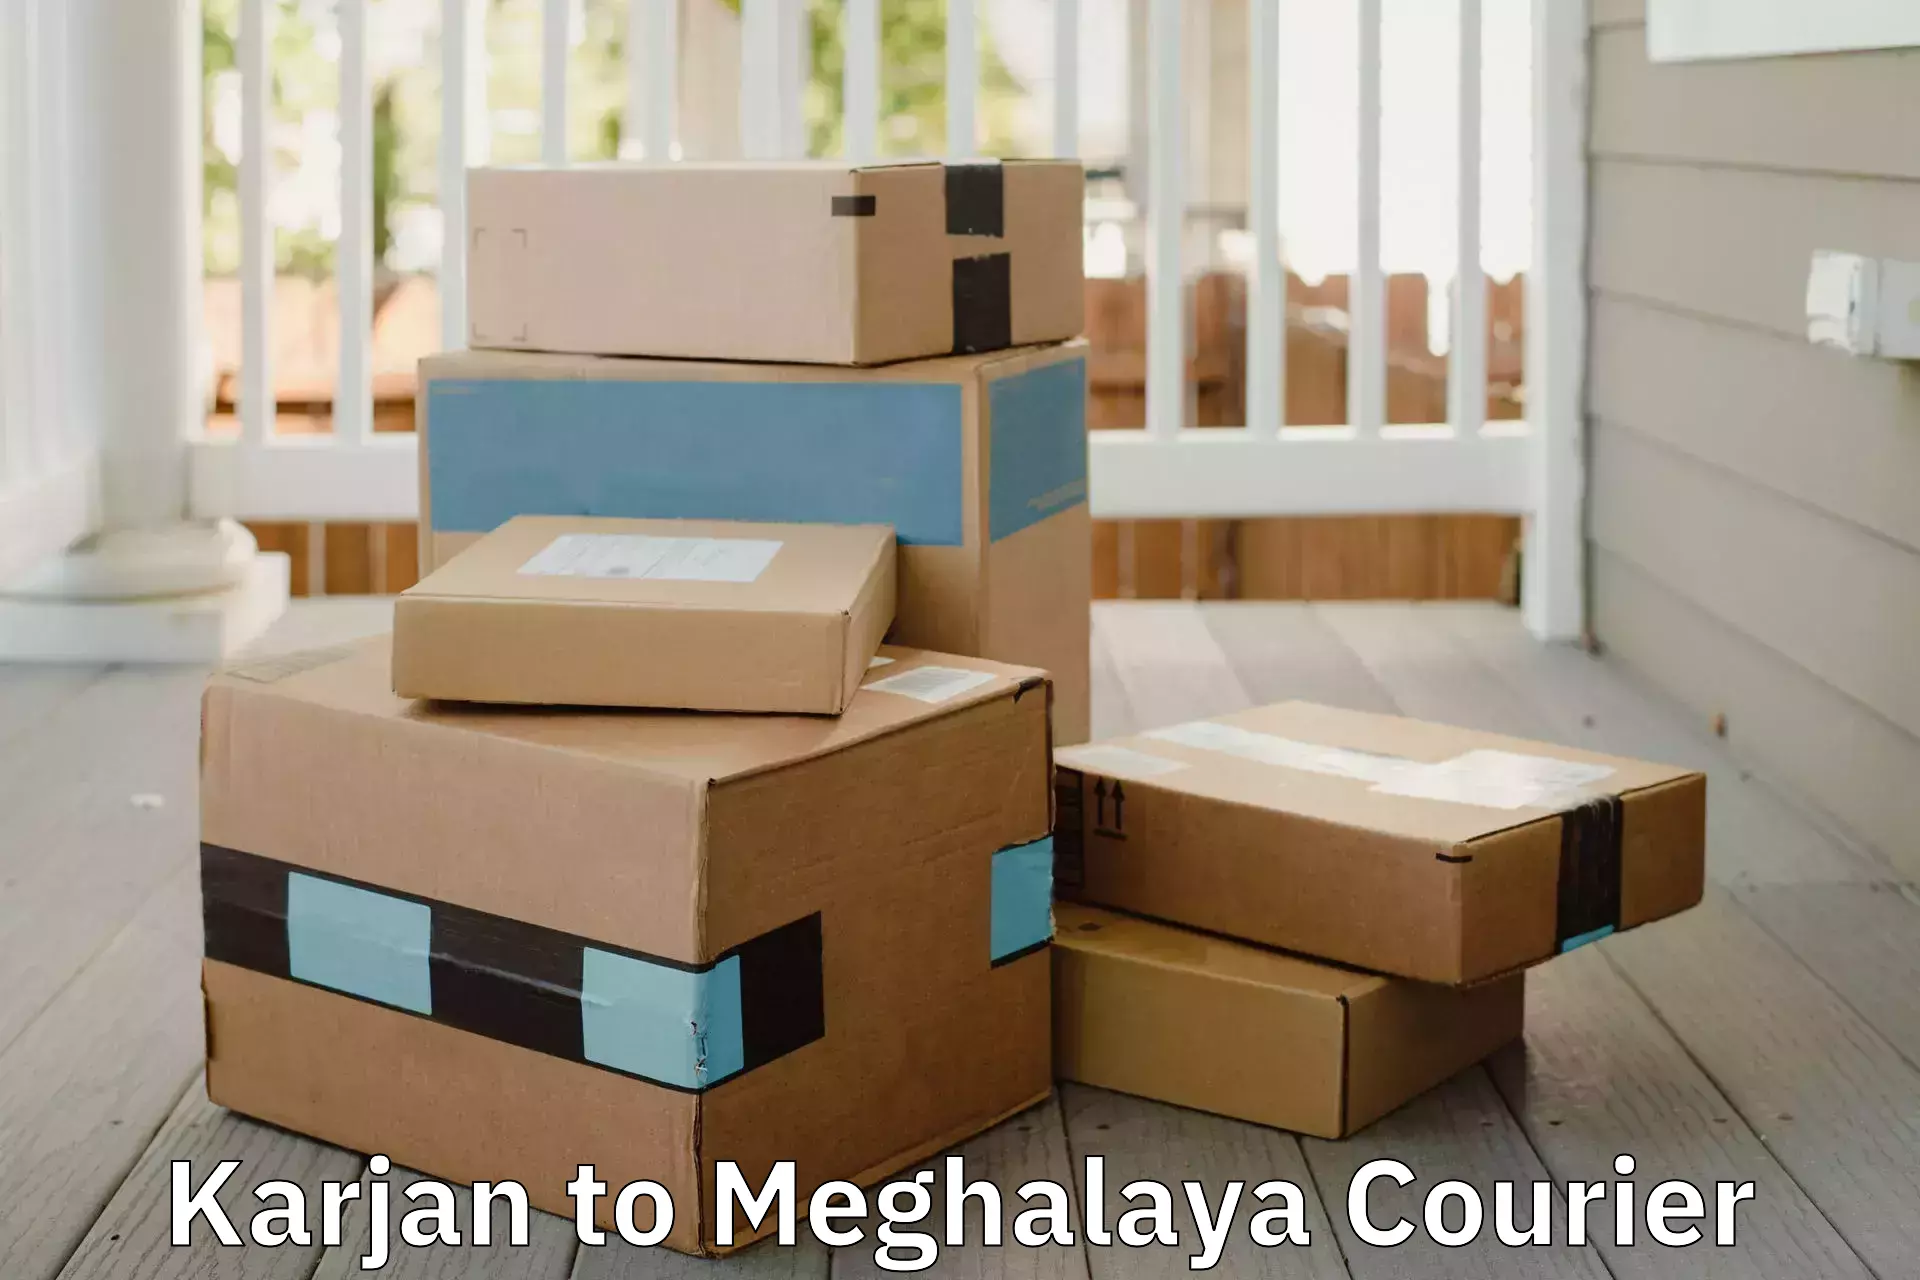 Full-service household moving Karjan to Meghalaya